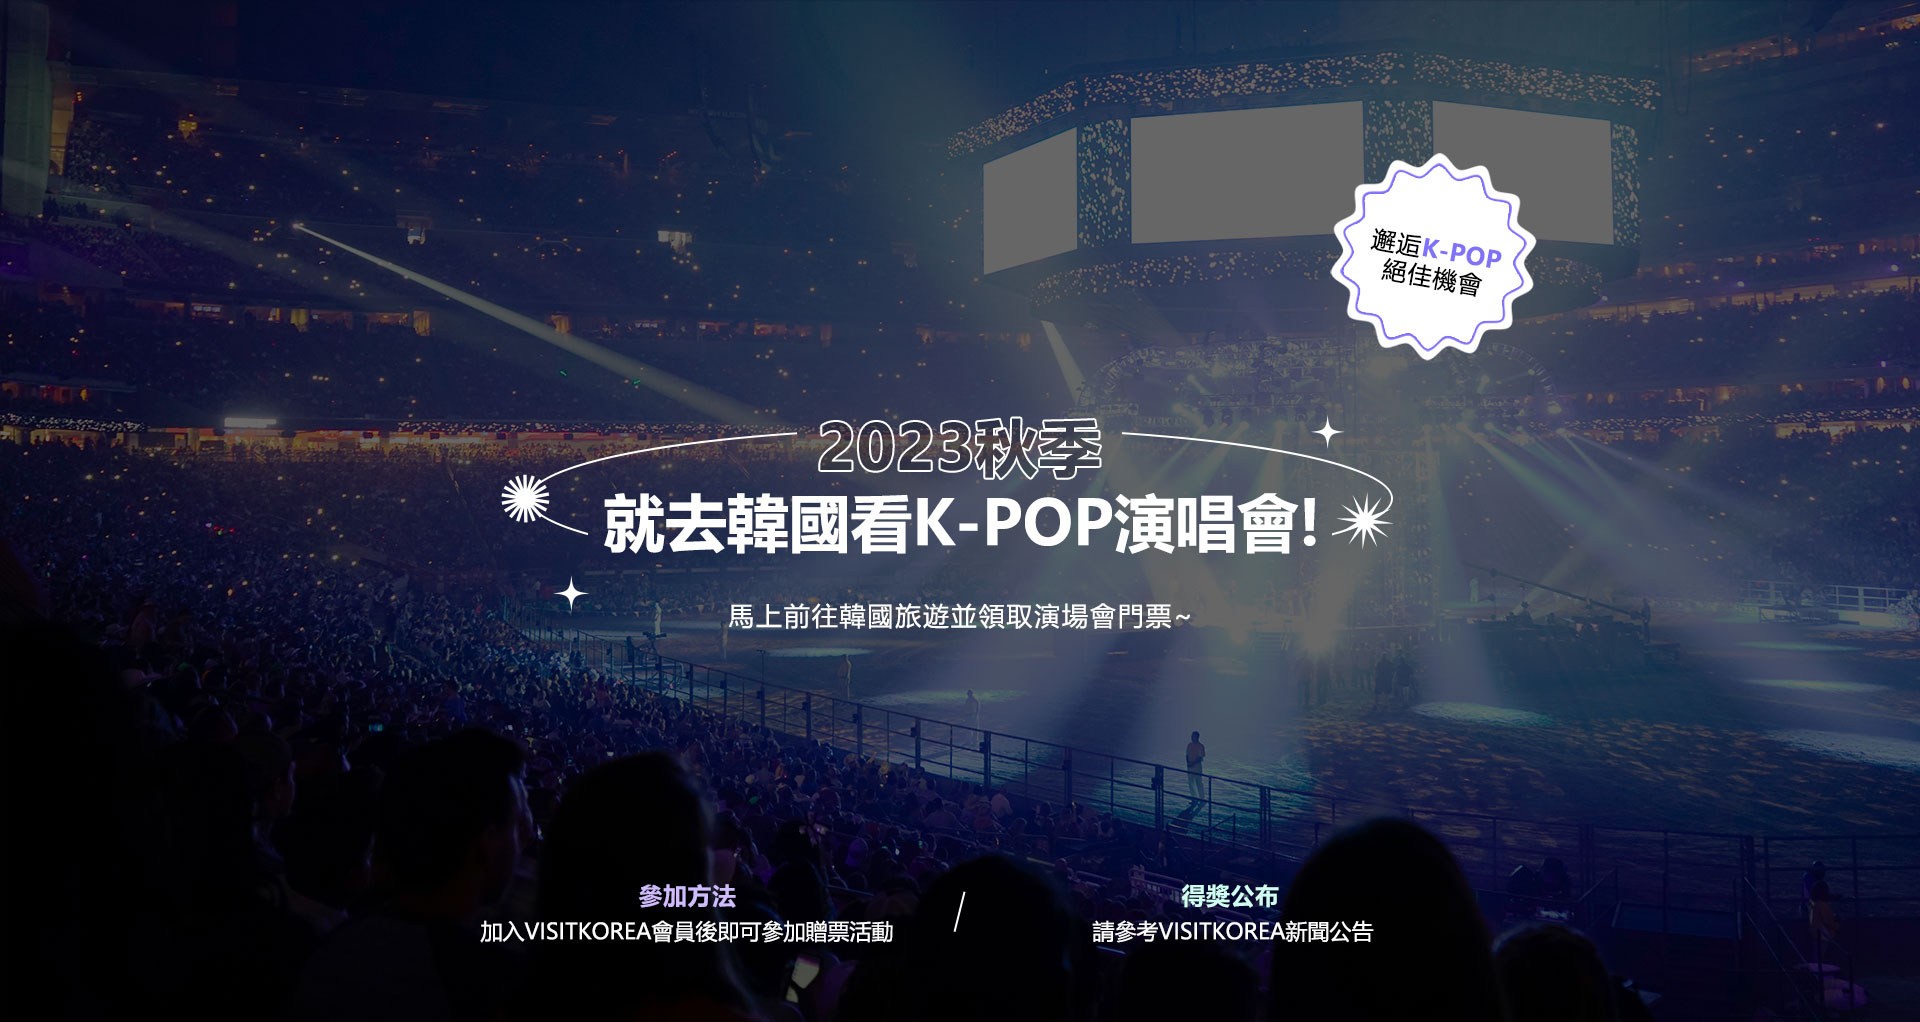 2023秋季就去韓國看K-POP演唱會!馬上前往韓國旅遊並領取演場會門票~參加方法加入VISITKOREA會員後即可參加贈票活動得獎公布請參考VISITKOREA新聞公告